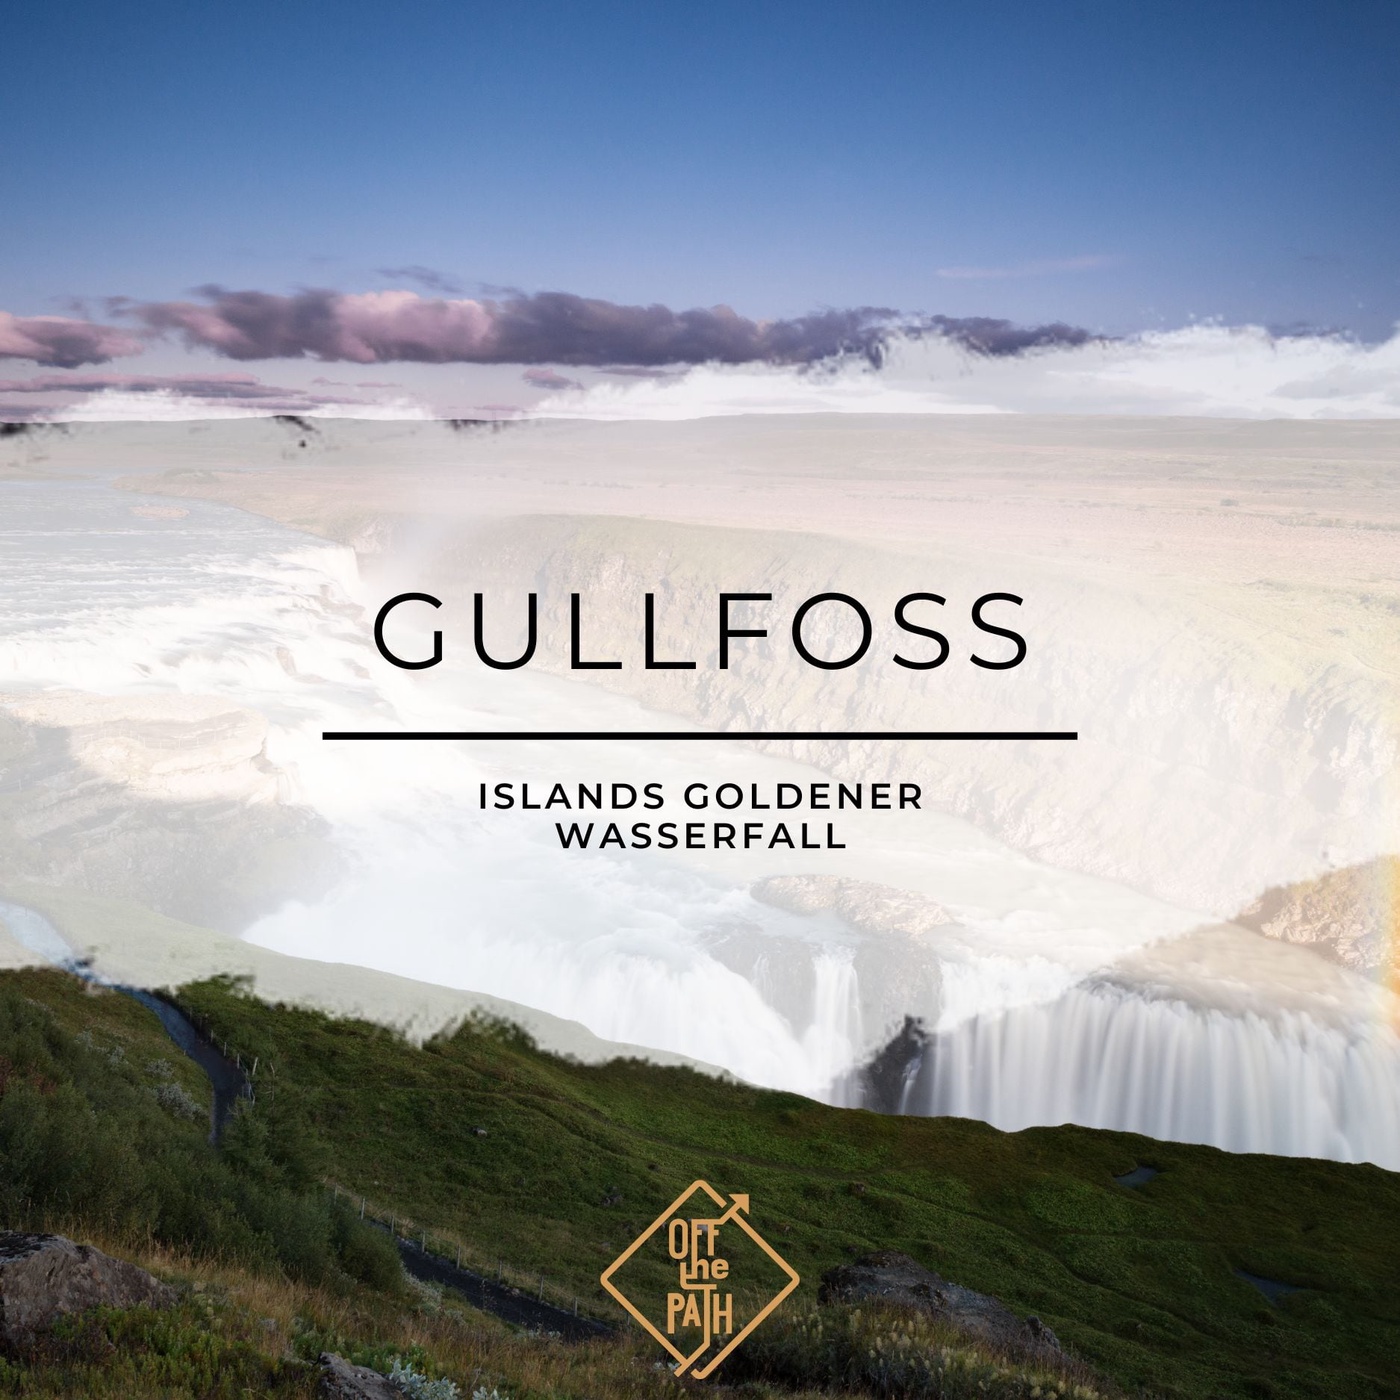 Gullfoss - Islands goldener Wasserfall